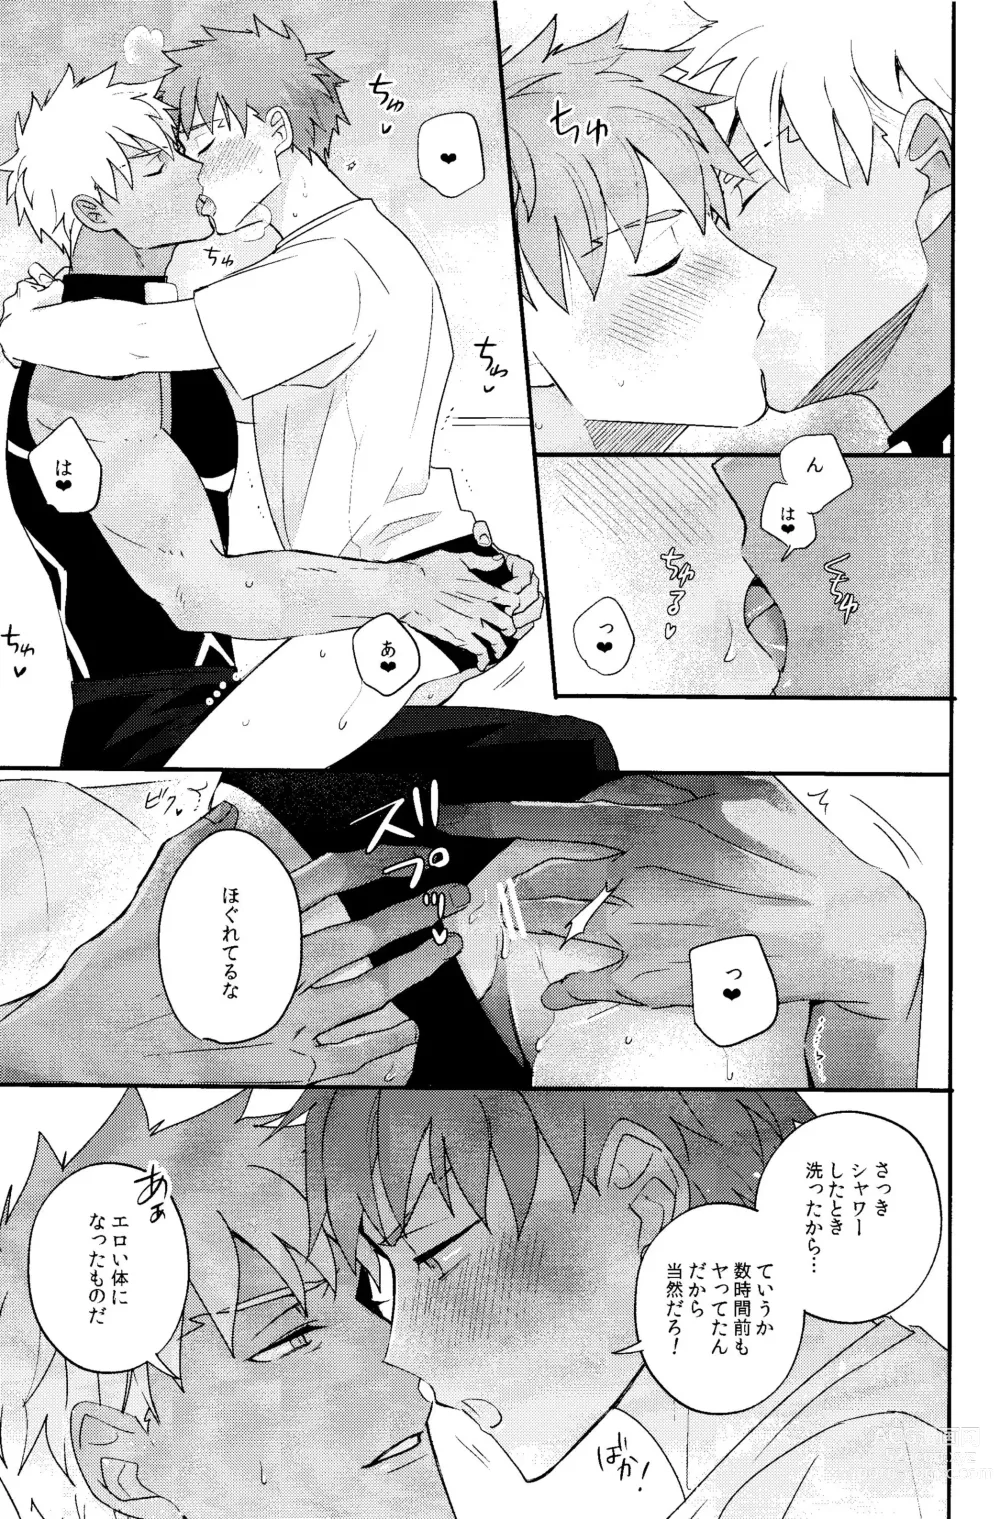 Page 12 of doujinshi Iru